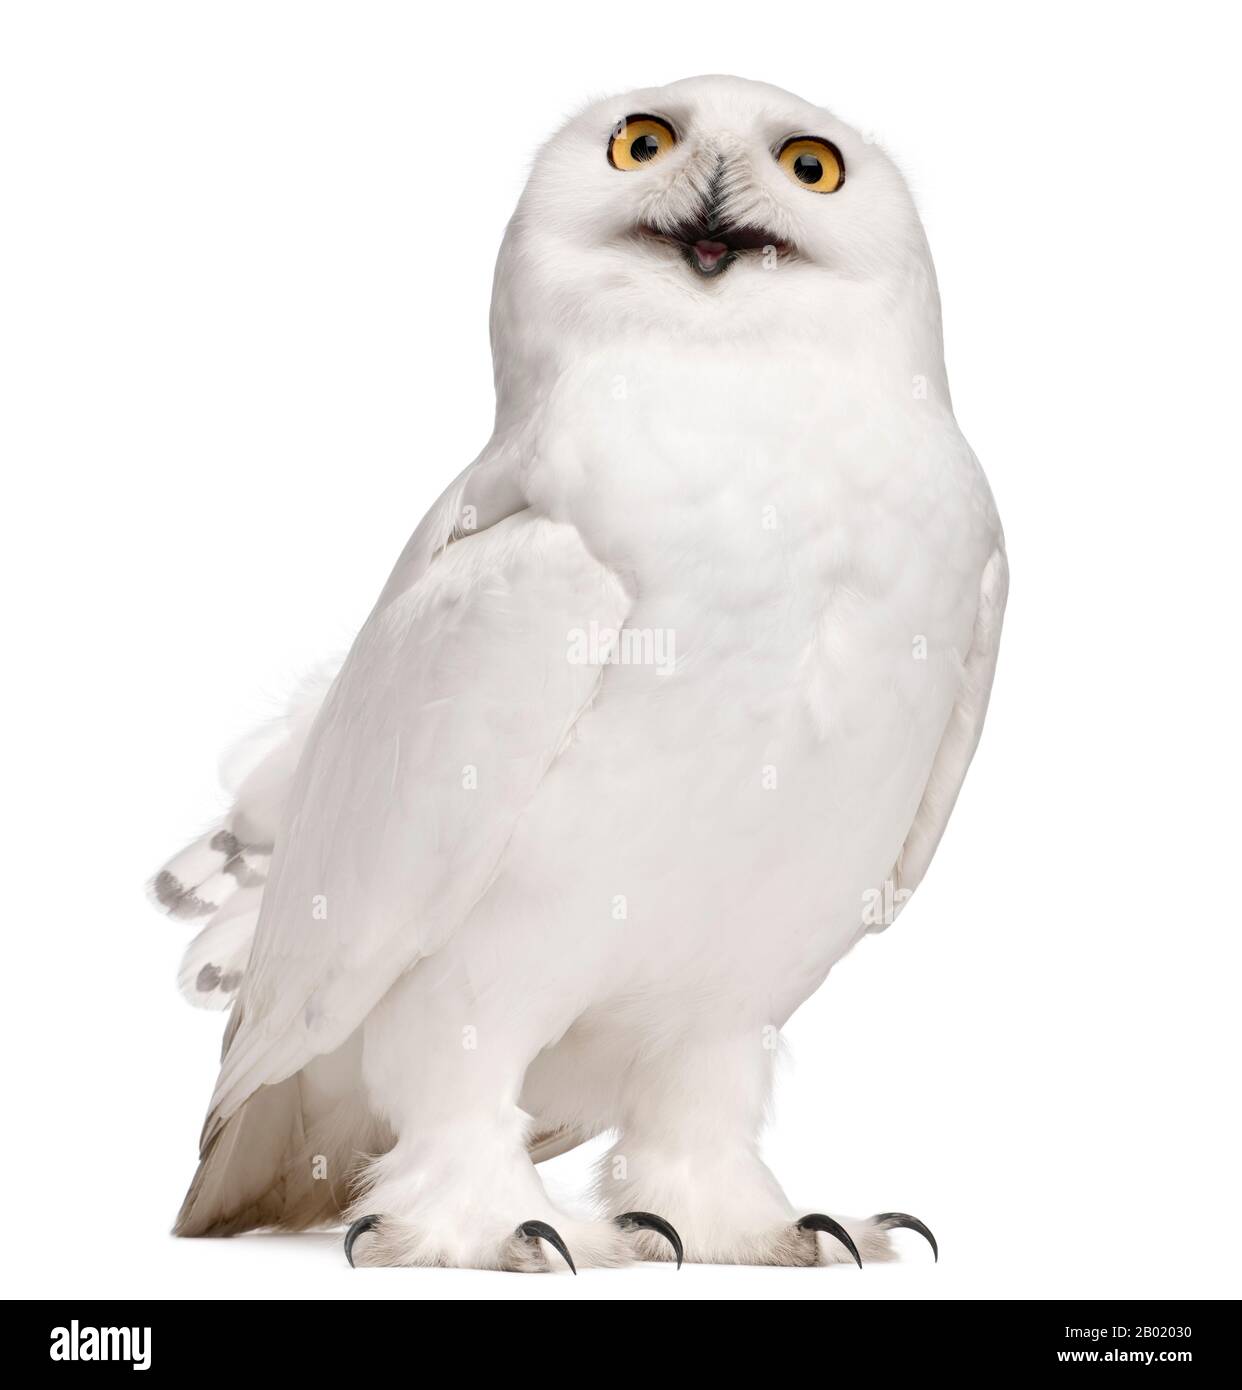 Uomo Snowy Owl, Bubo scandiacus, 8 anni, di fronte a sfondo bianco Foto Stock